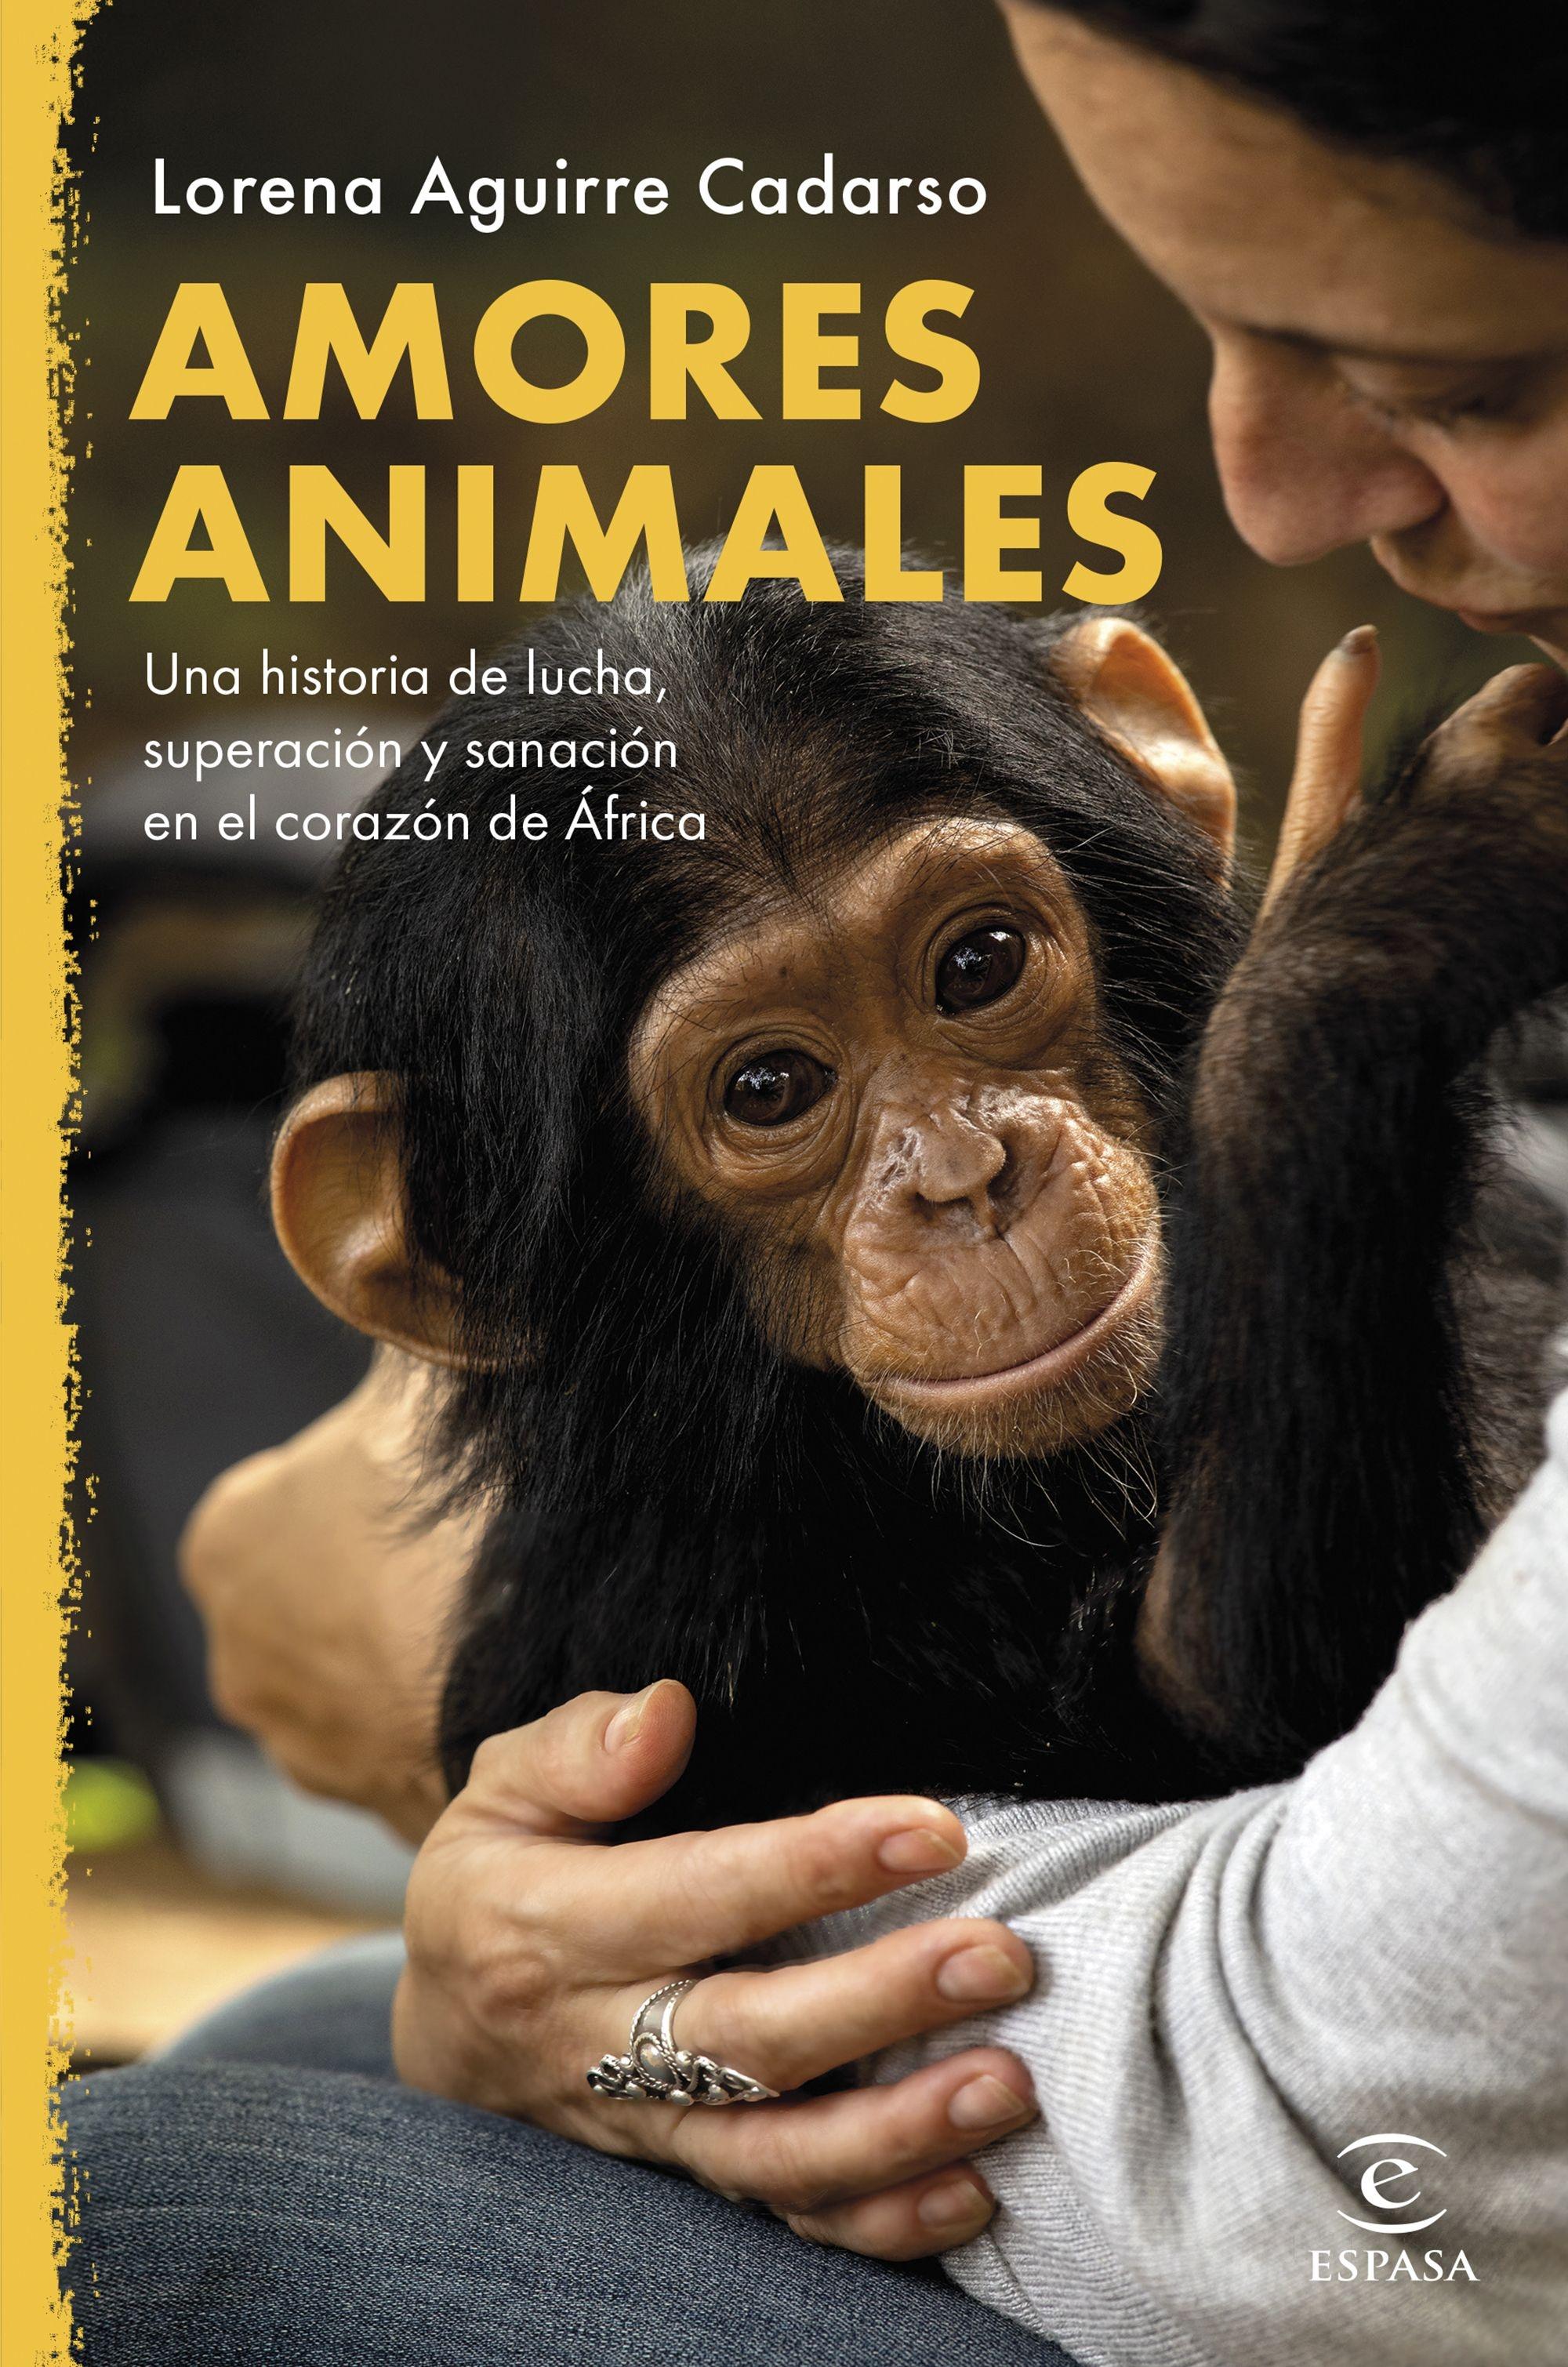 Amores animales "Una historia de lucha, superación y sanación en el corazón de África"